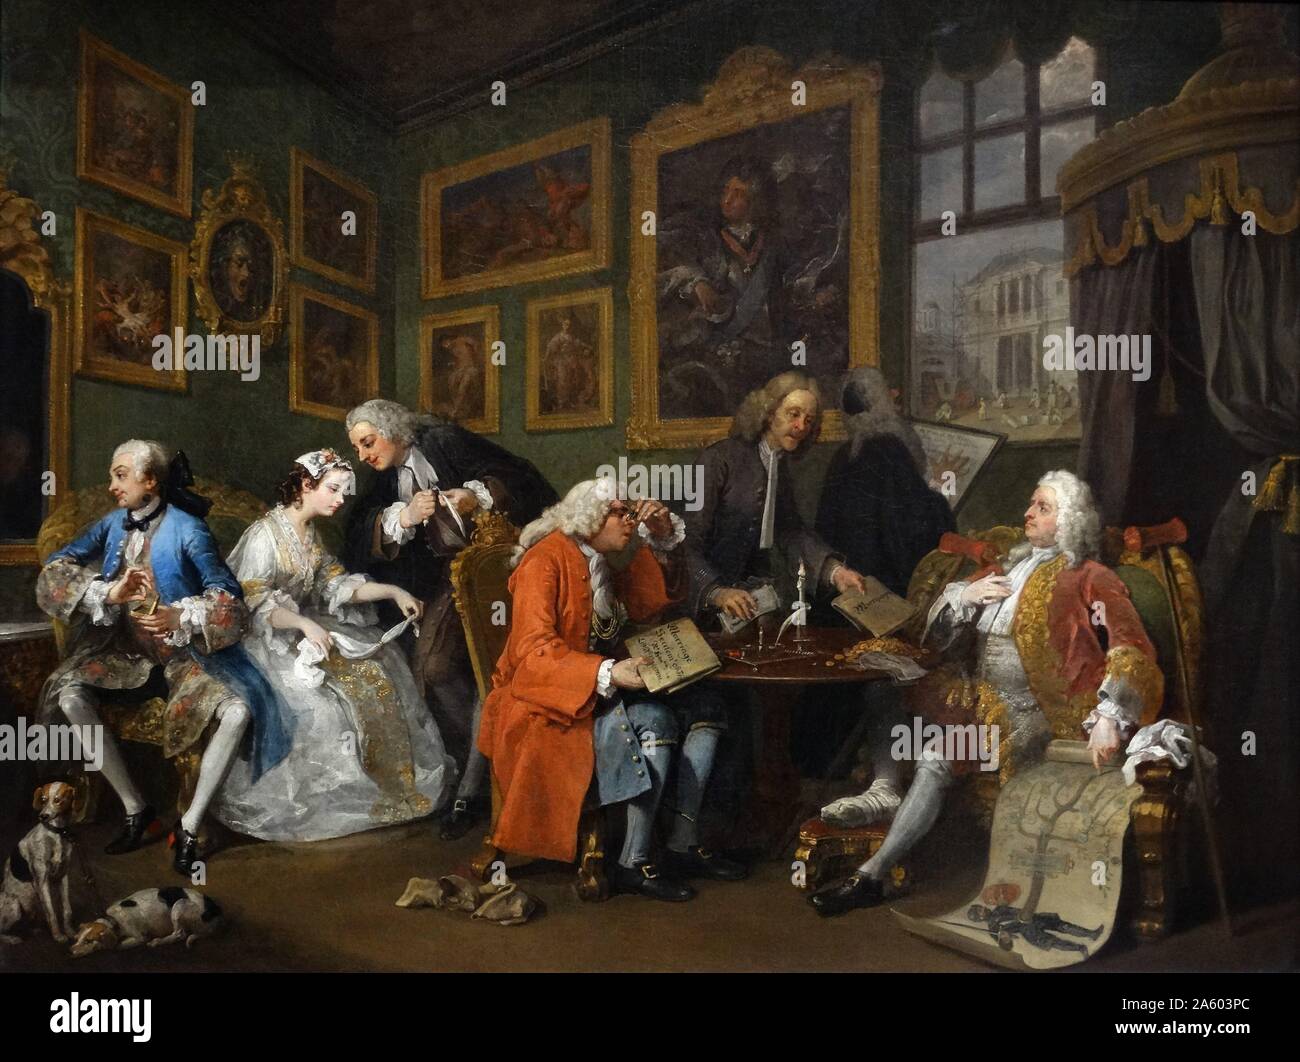 Pittura intitolato 'Matrimonio à-la-mode: 1. L'insediamento del matrimonio" di William Hogarth (1697-1764) un pittore inglese, printmaker, pittoriche satiro, critico sociale e fumettista editoriale. Datata xviii secolo Foto Stock